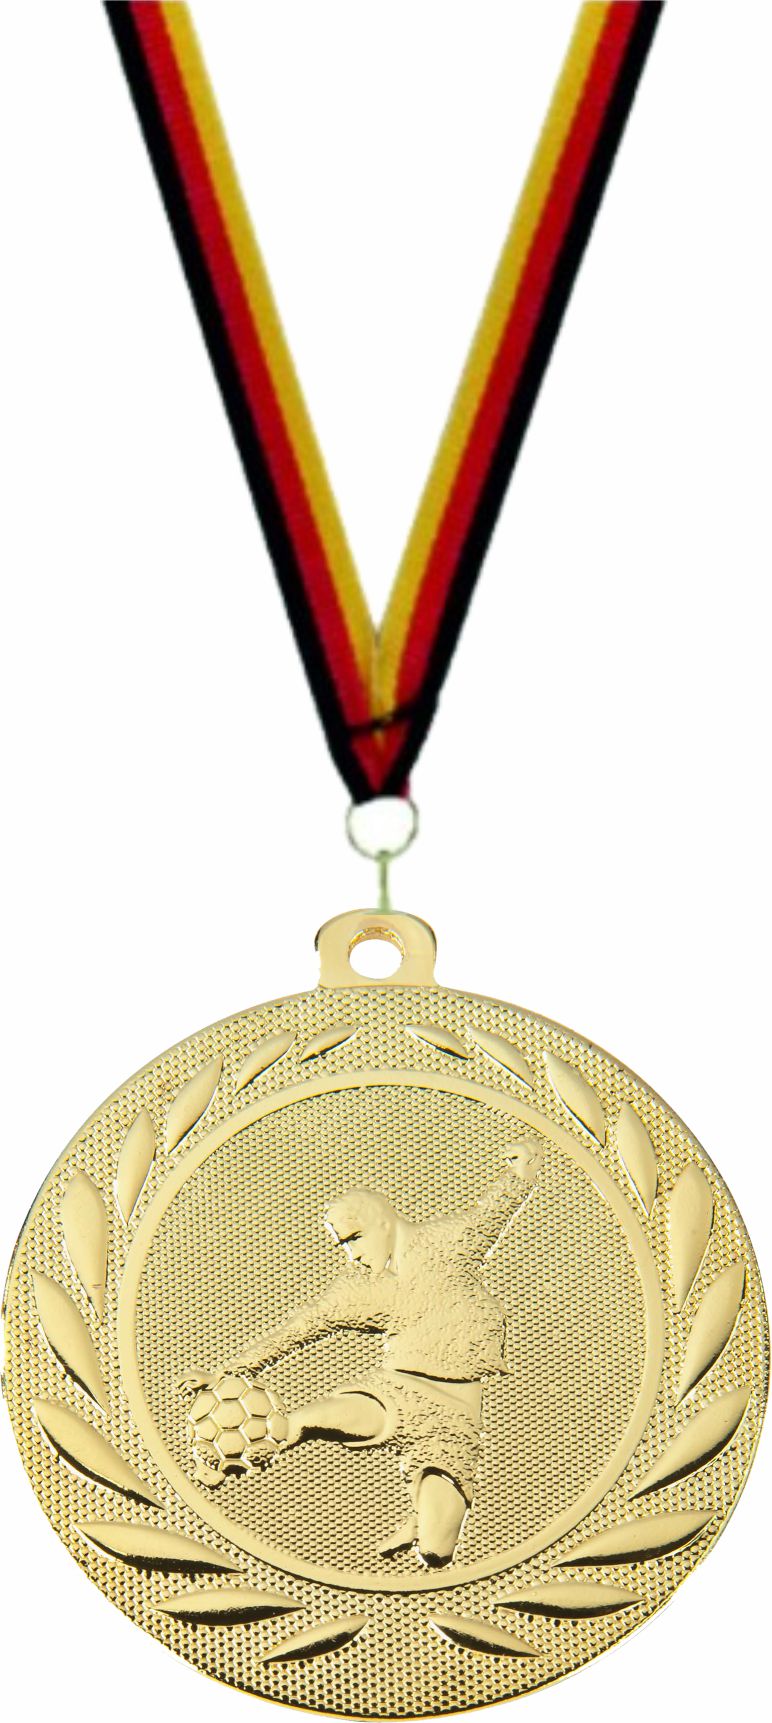 Fußball Medaille DI5000C inkl. Band u. Beschriftung  Gold Fertig montiert gegen Aufpreis